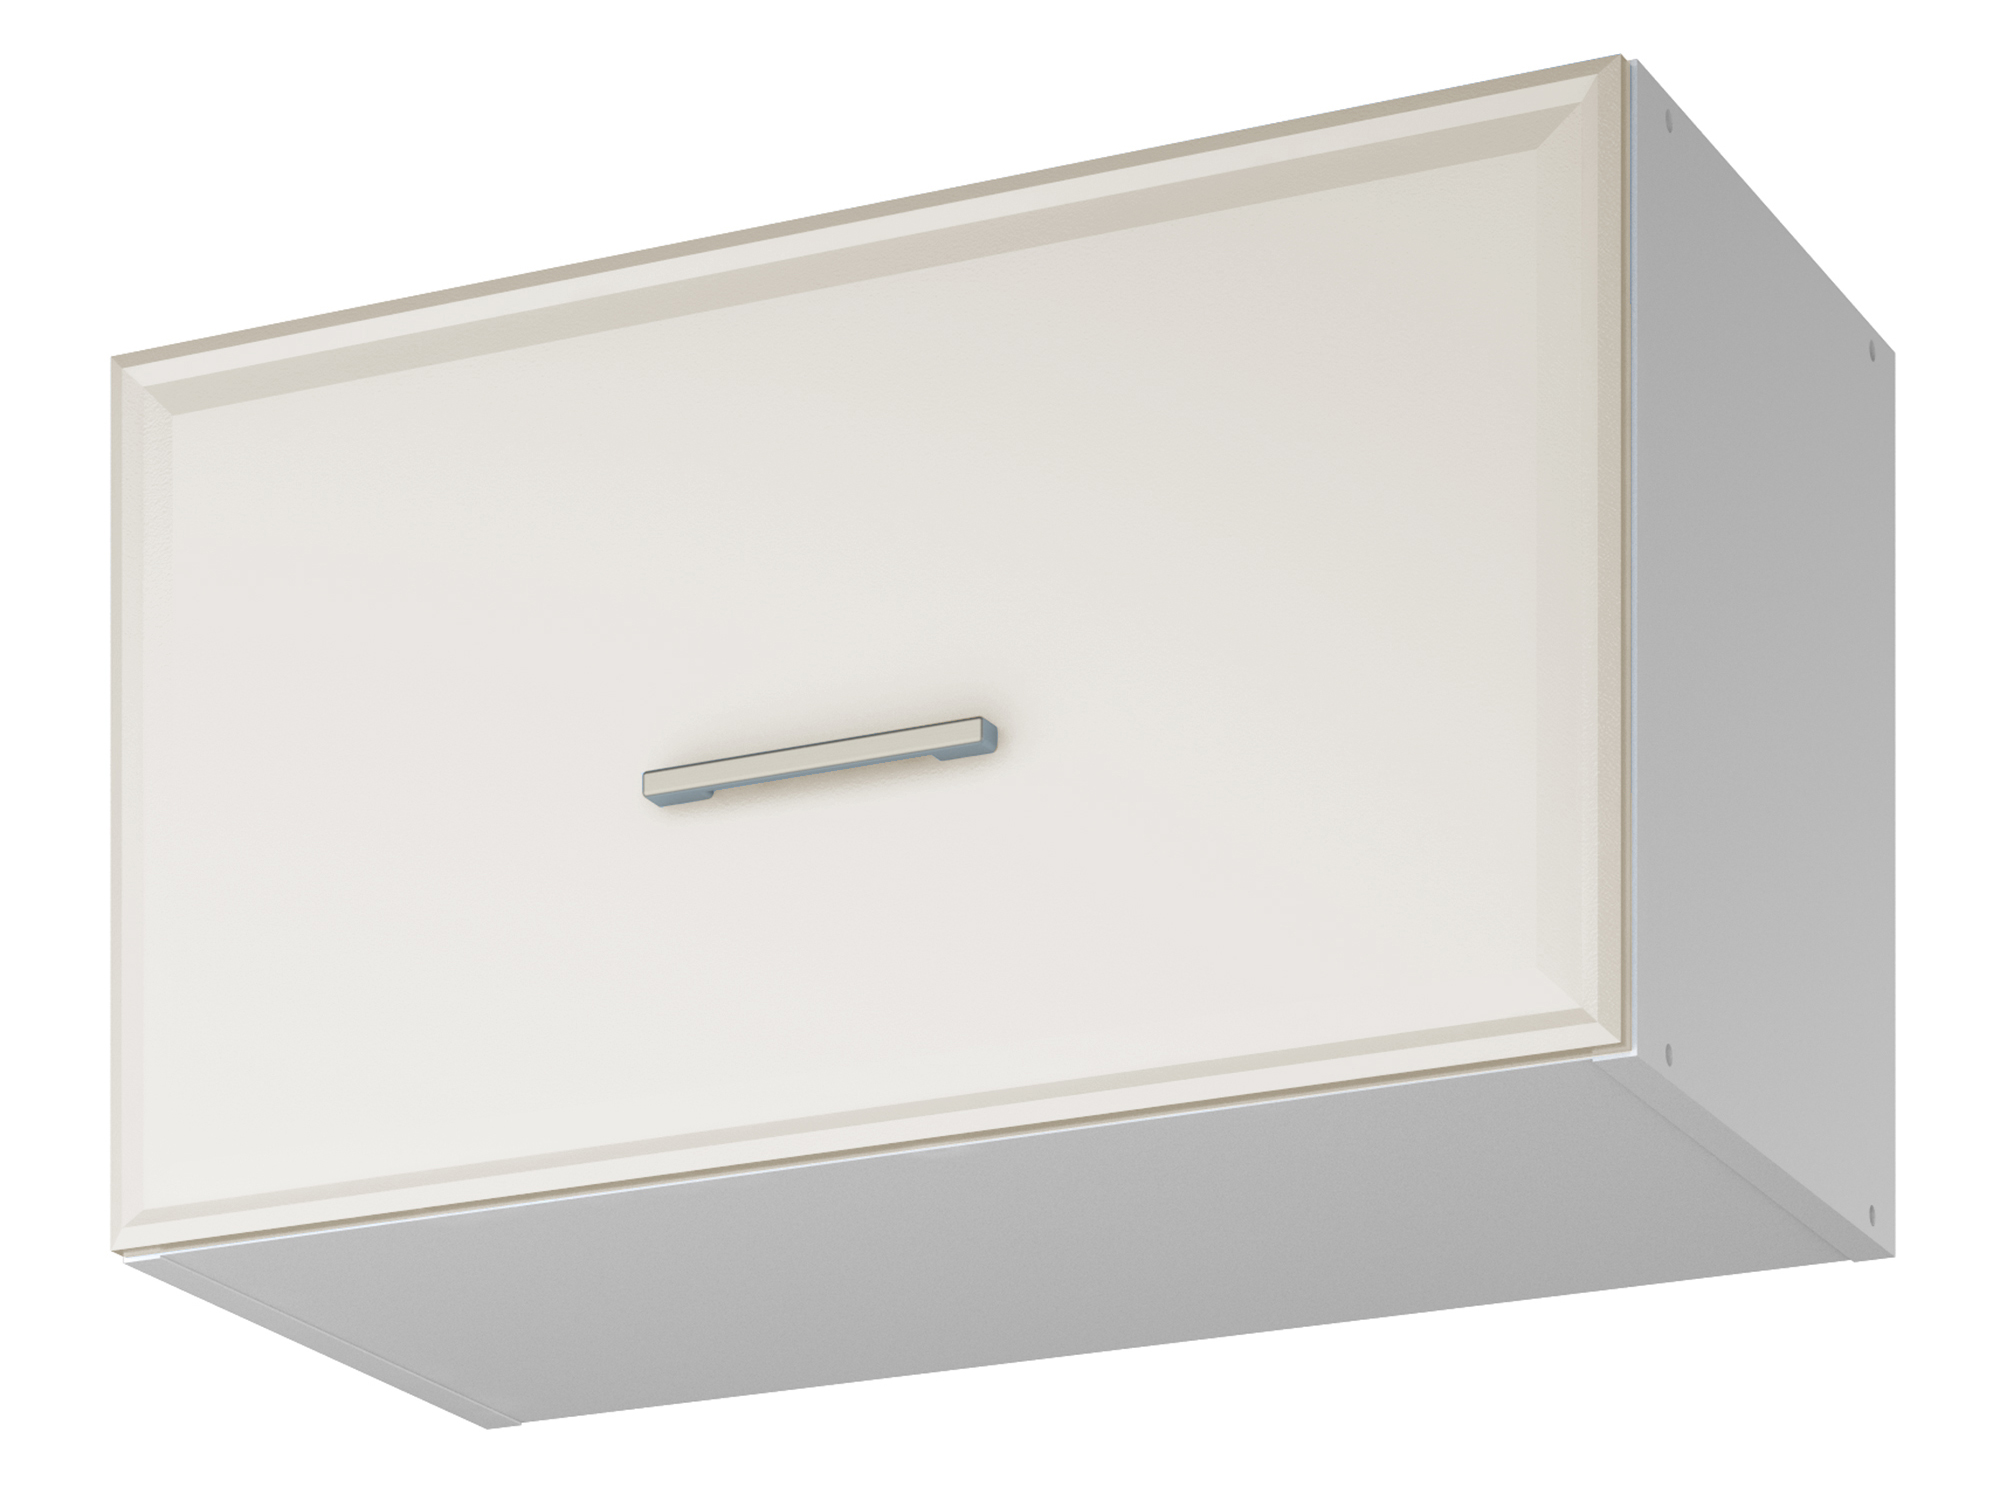 Шкаф навесной для вытяжки Greta 60 см Светлый, , Белый, МДФ, ЛДСП фасад со стеклом greta 40 см светлый белый мдф стекло лдсп